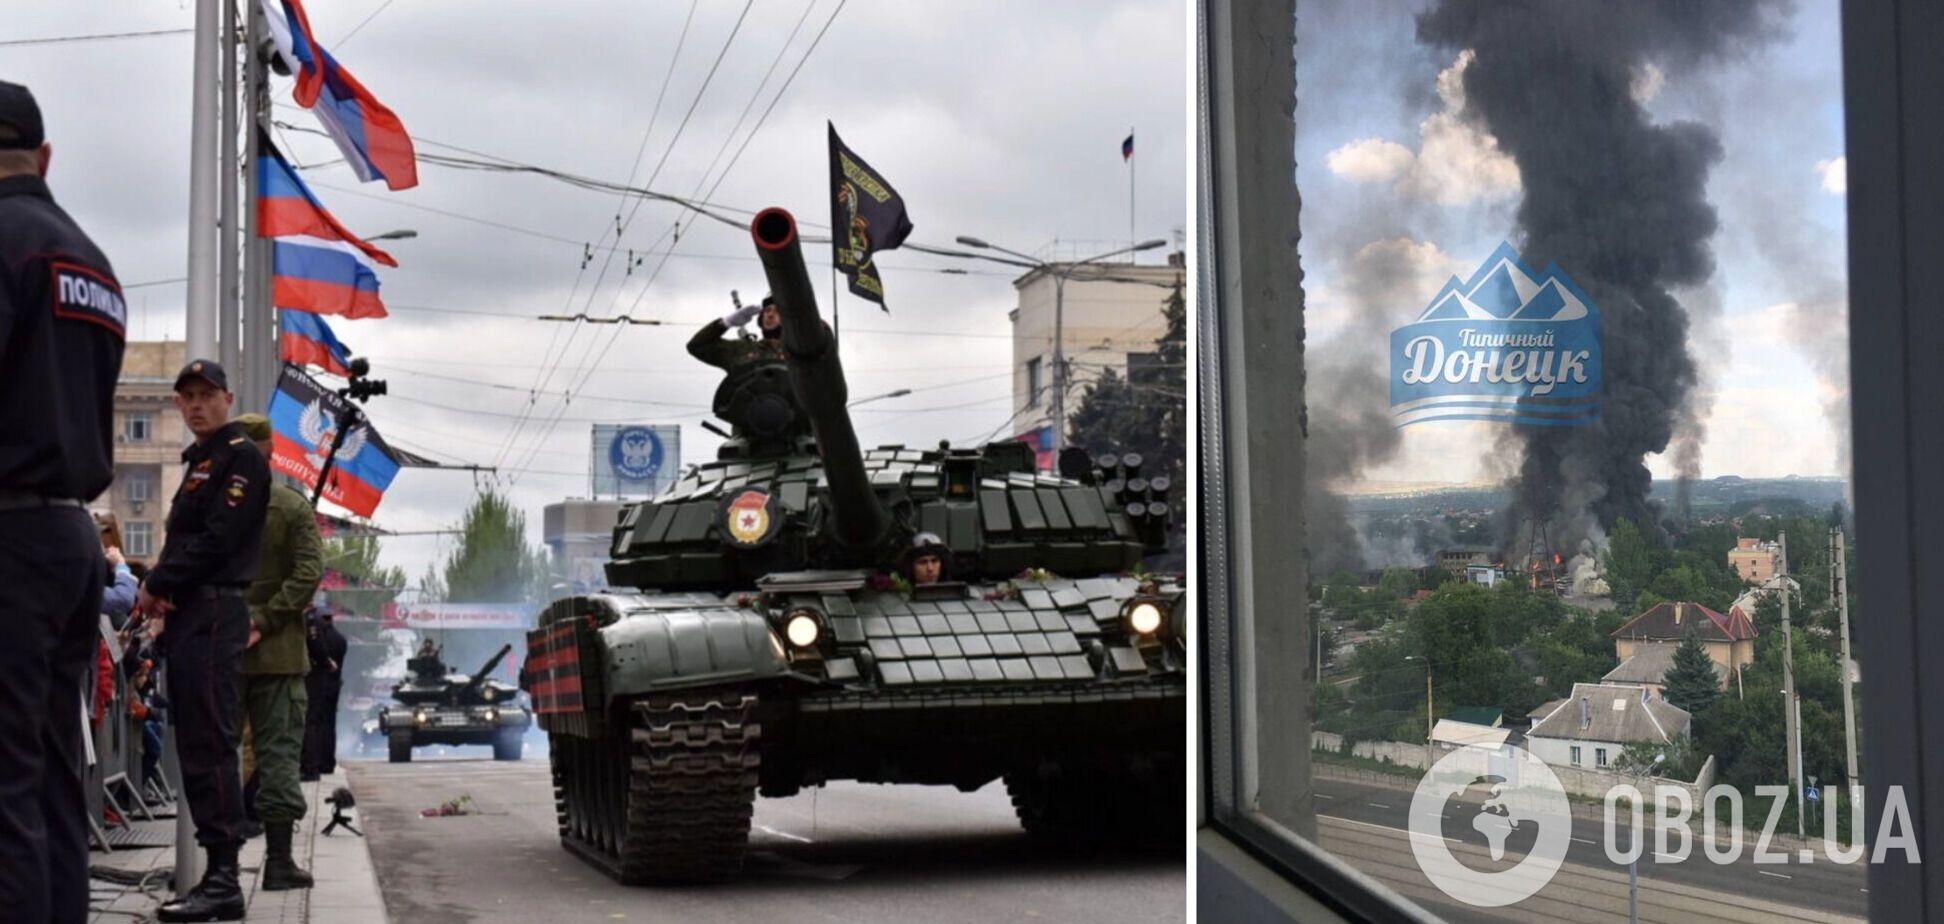 Горить та вибухає: на військовій базі в окупованому Донецьку почалася пожежа. Фото і відео